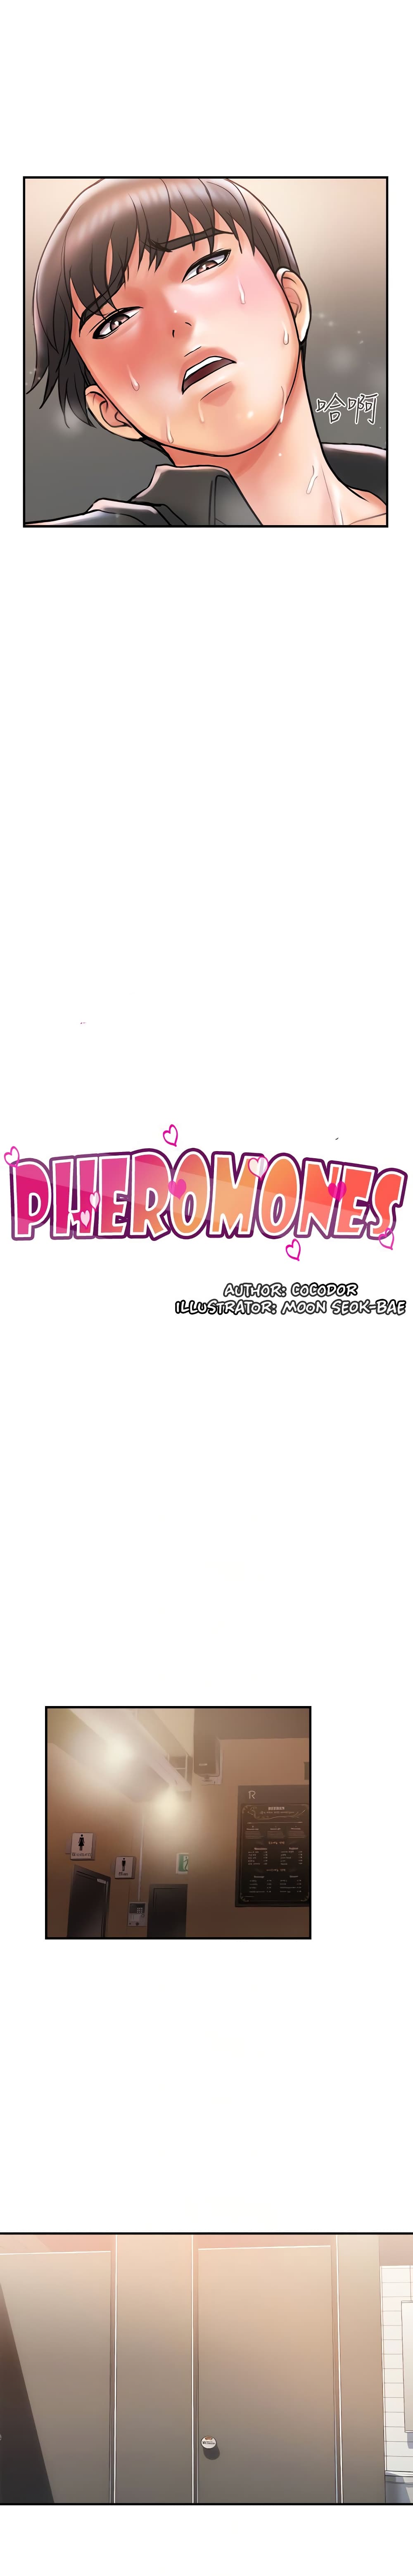 Pheromones 4 (4)